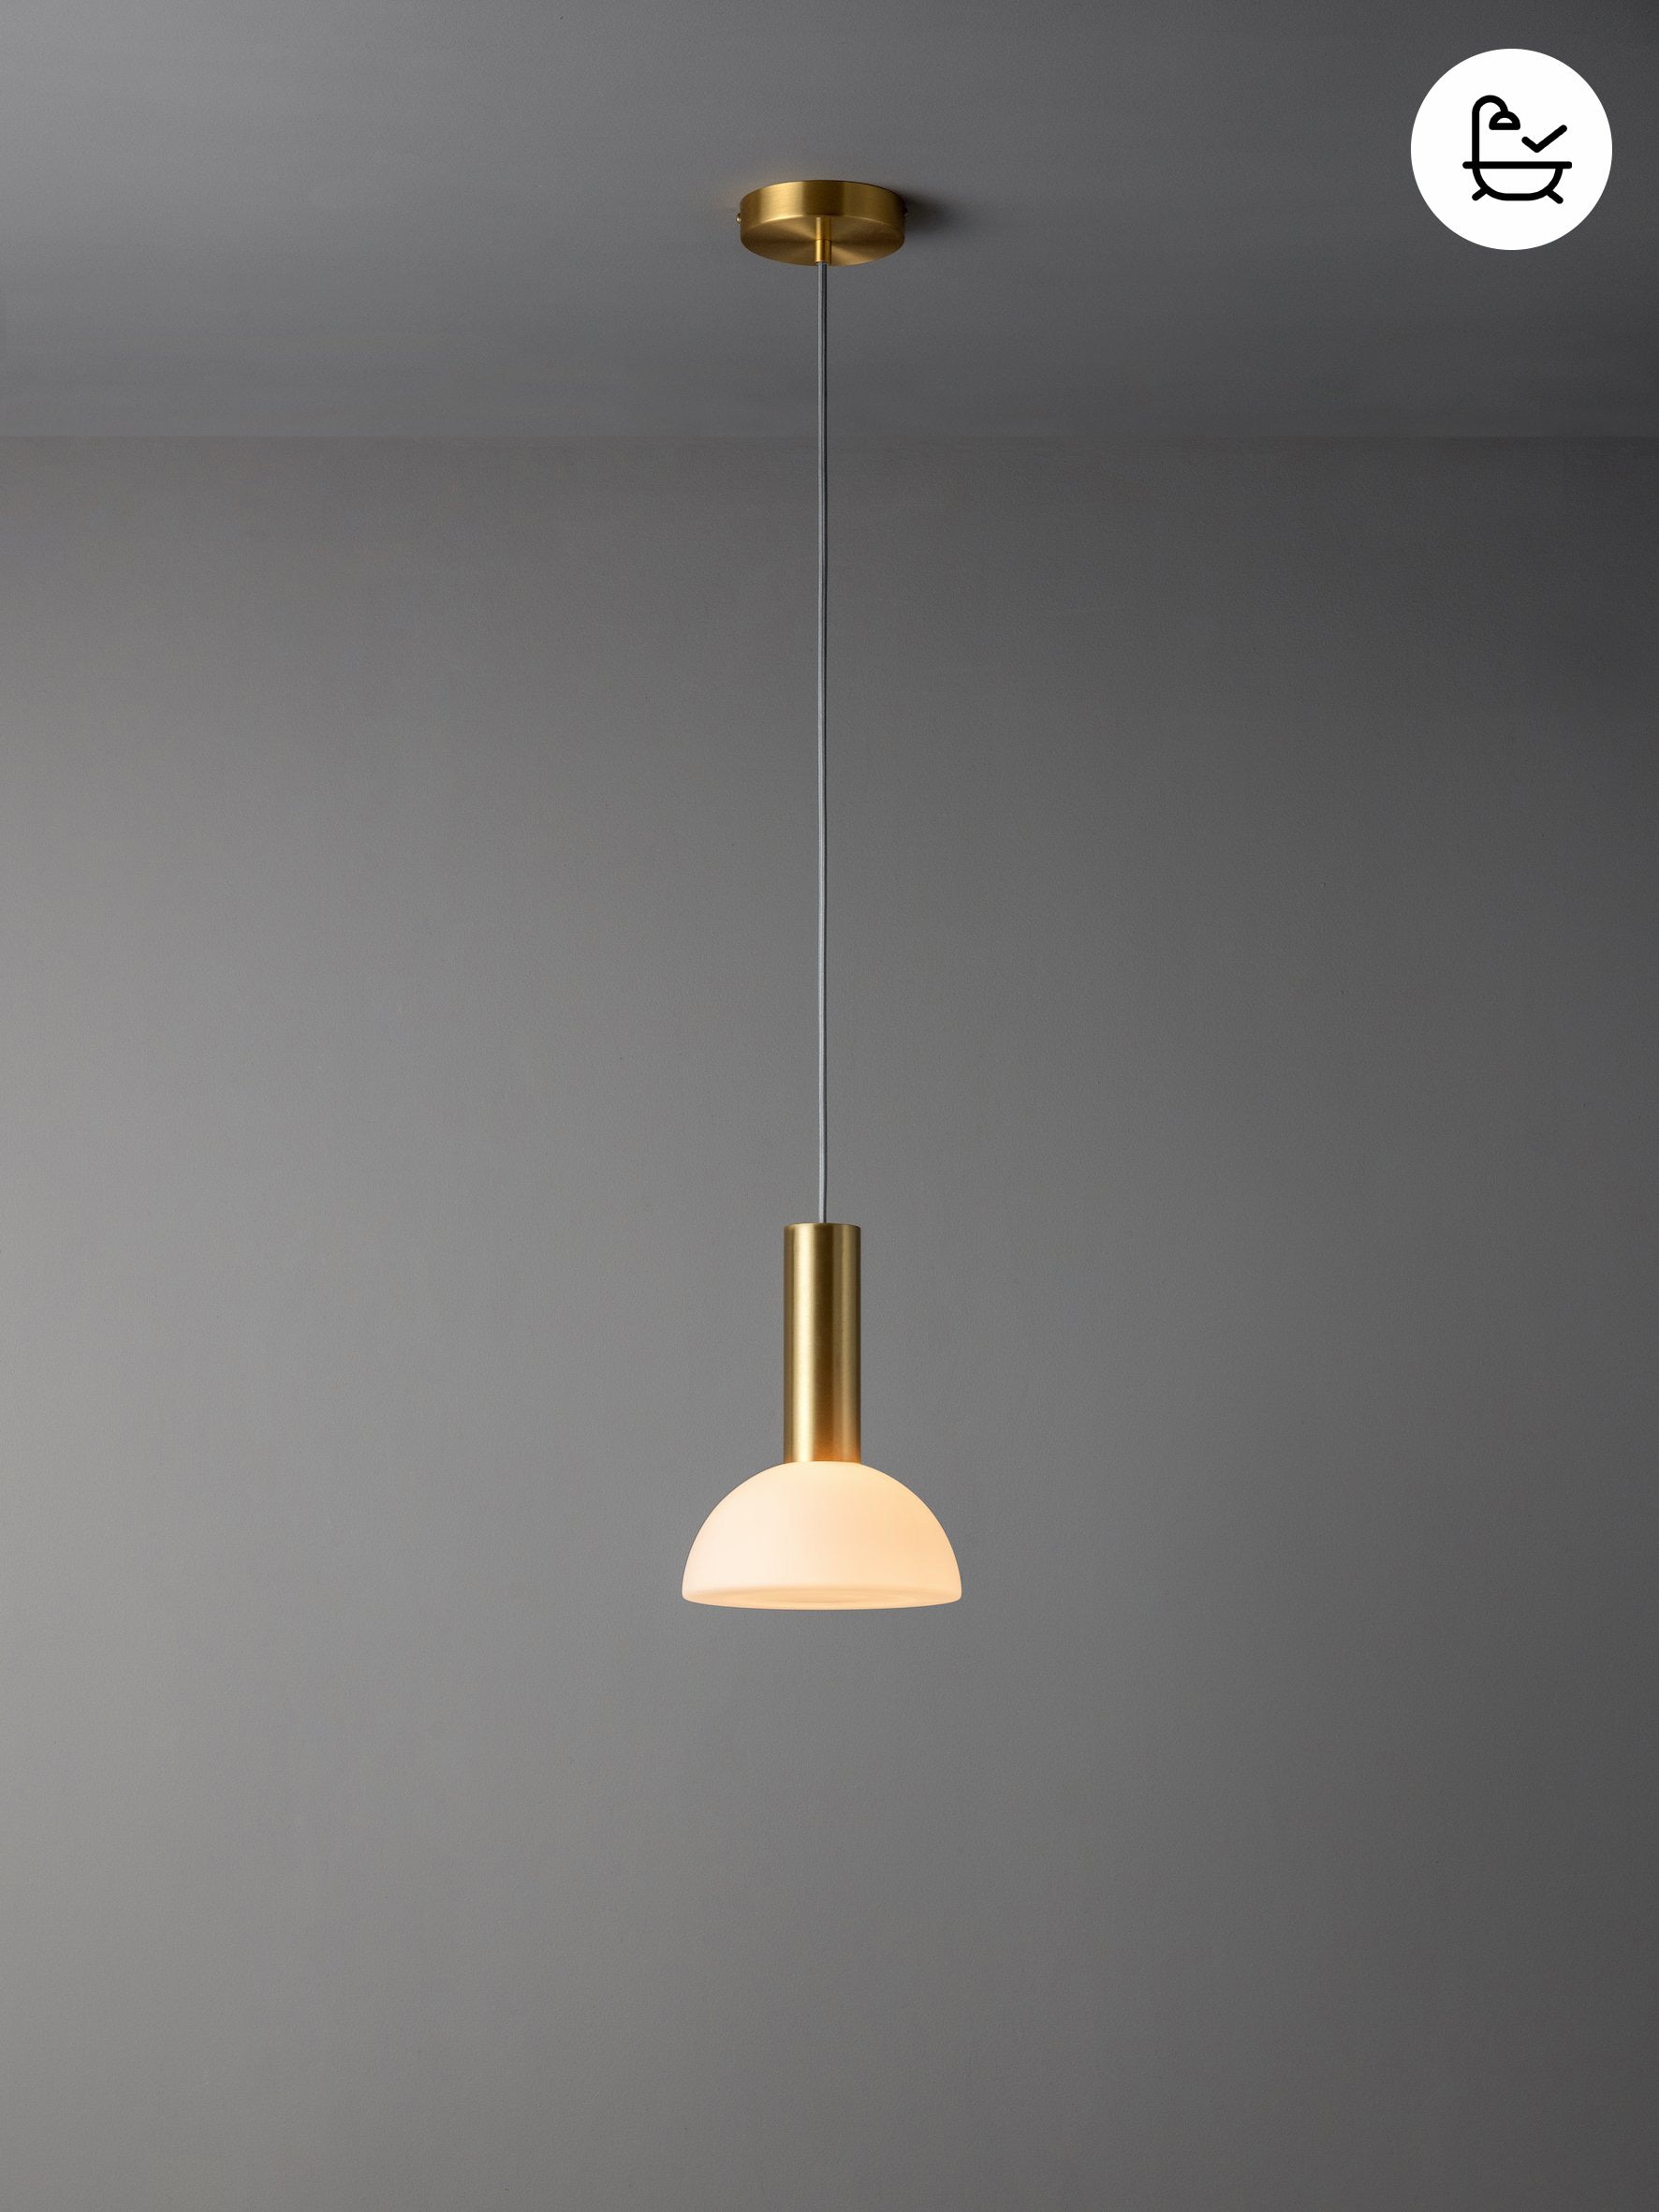 Silio - 1 light brushed brass and opal pendant | Ceiling Light | Lights & Lamps | UK | Modern Affordable Designer Lighting